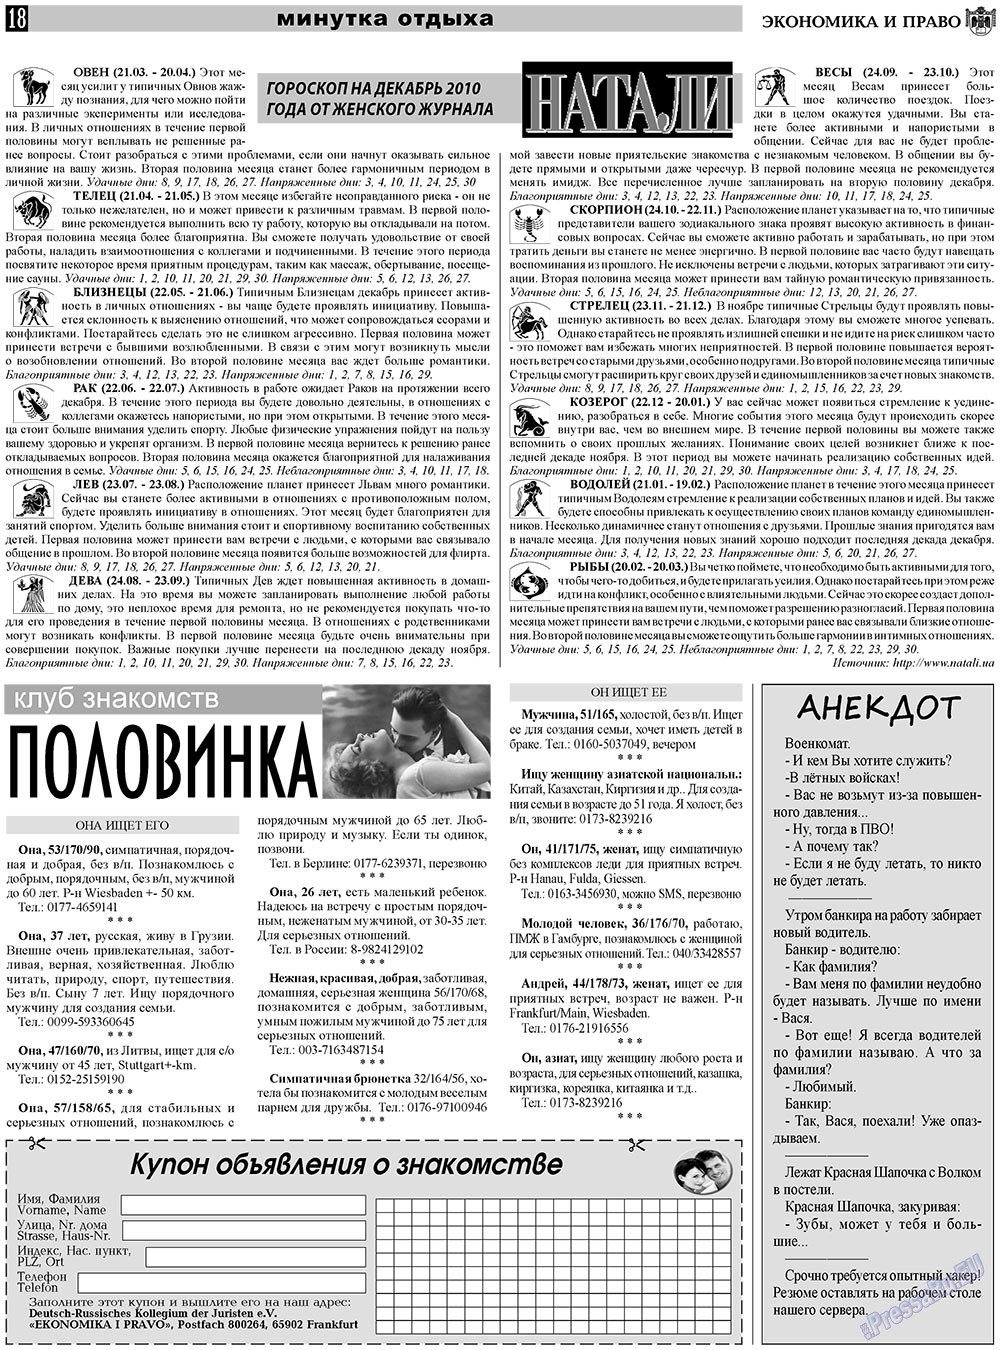 Экономика и право, газета. 2010 №12 стр.18